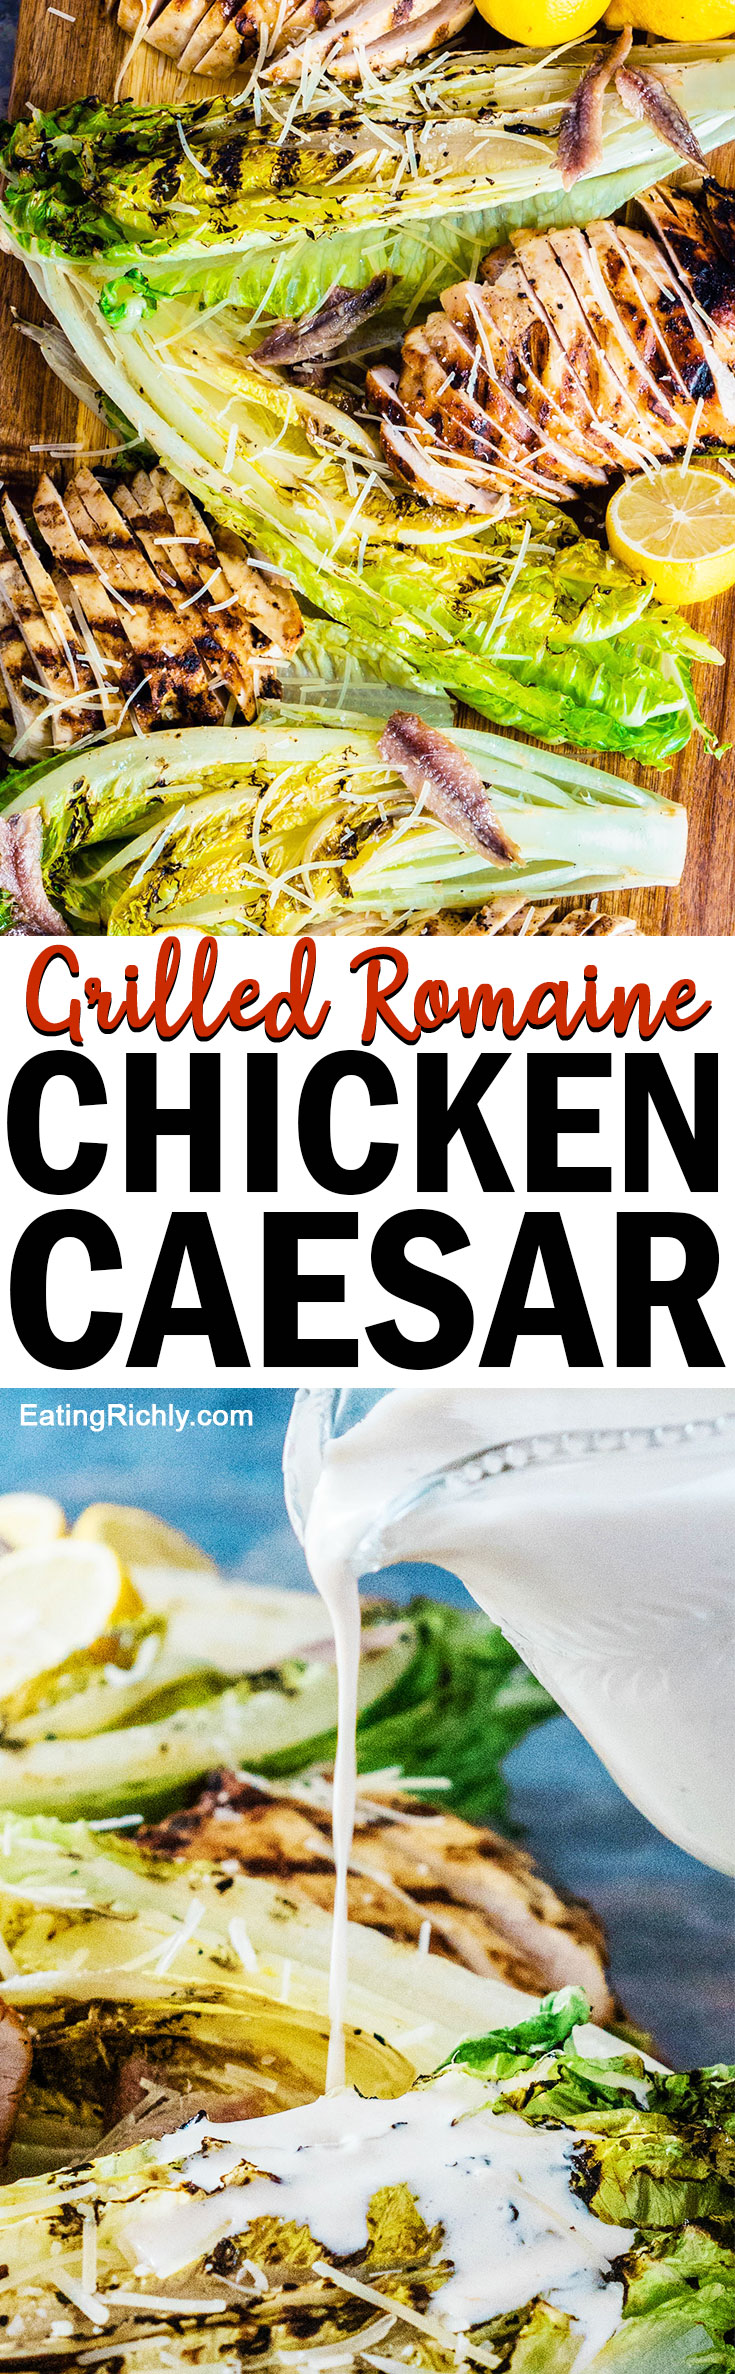 Grilled Romaine Hearts Chicken Caesar Salad